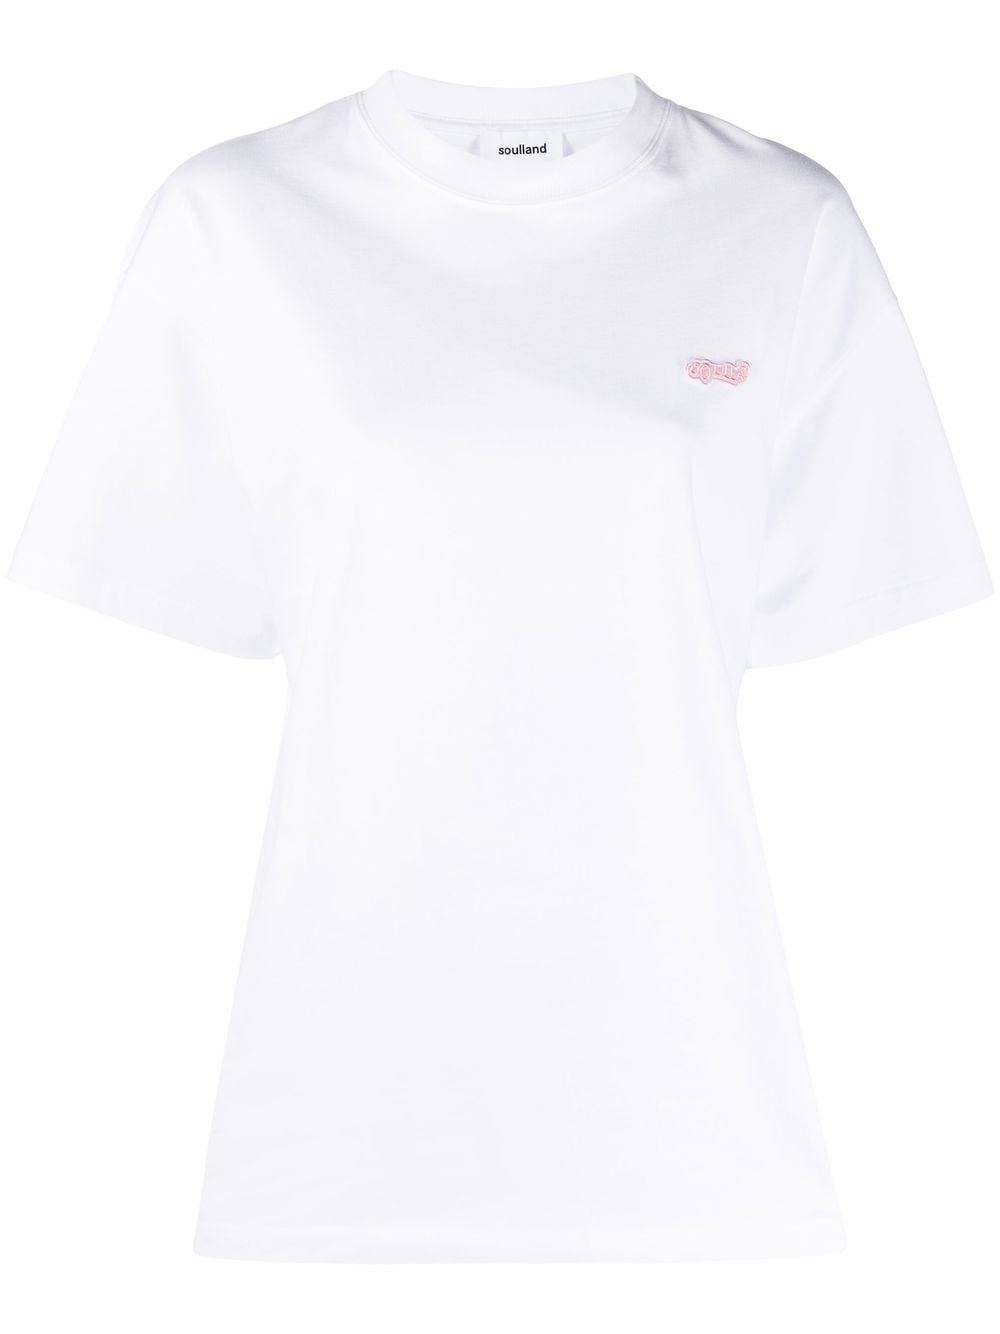 soulland t-shirt à logo imprimé - blanc